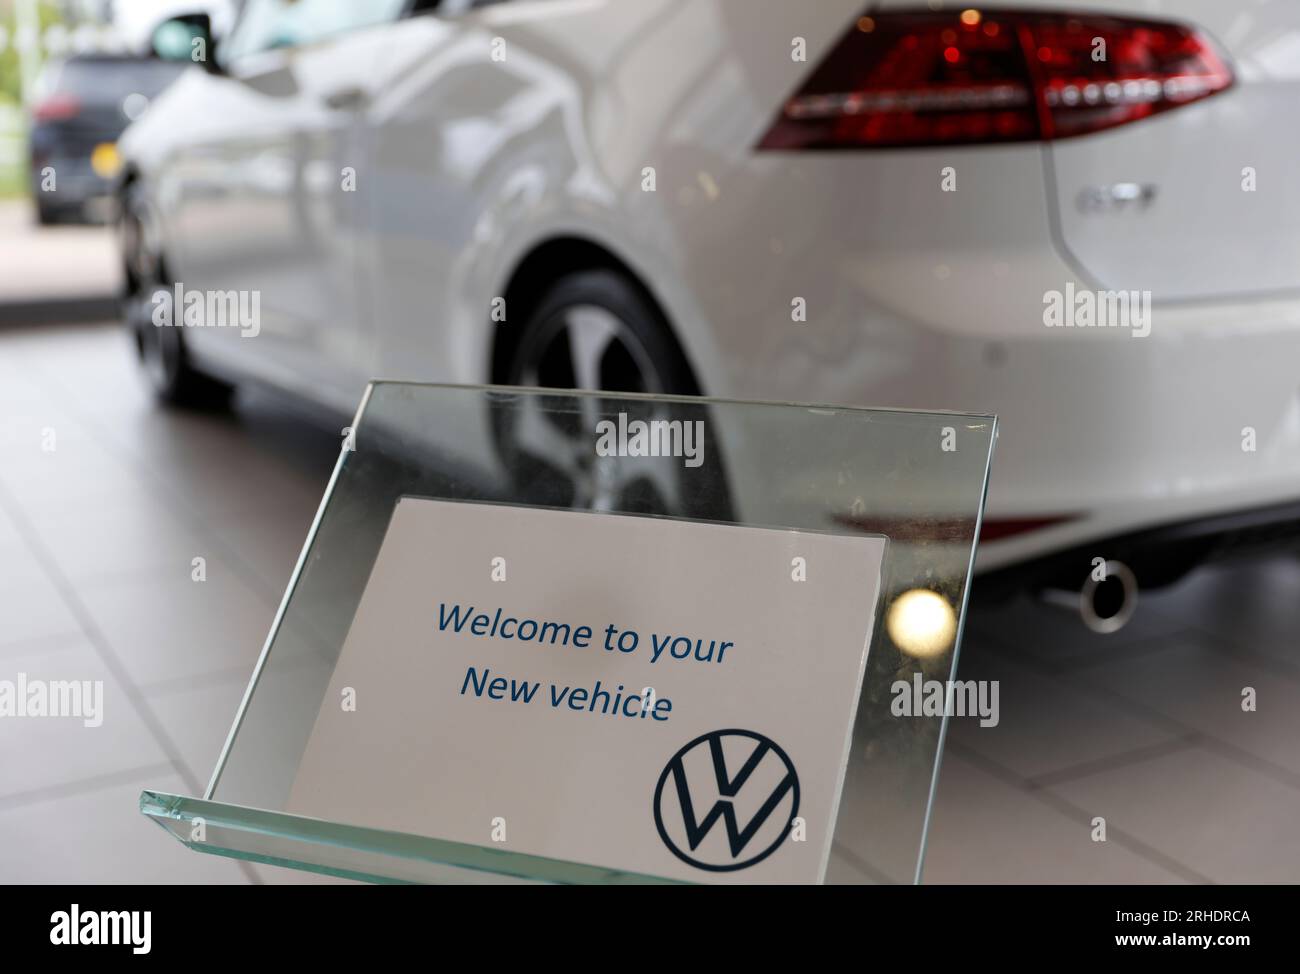 Achat d'une nouvelle voiture, collecte d'une nouvelle voiture blanche dans le showroom de VW, Volkswagen Golf GTI MK7 3 portes à hayon voiture essence Banque D'Images